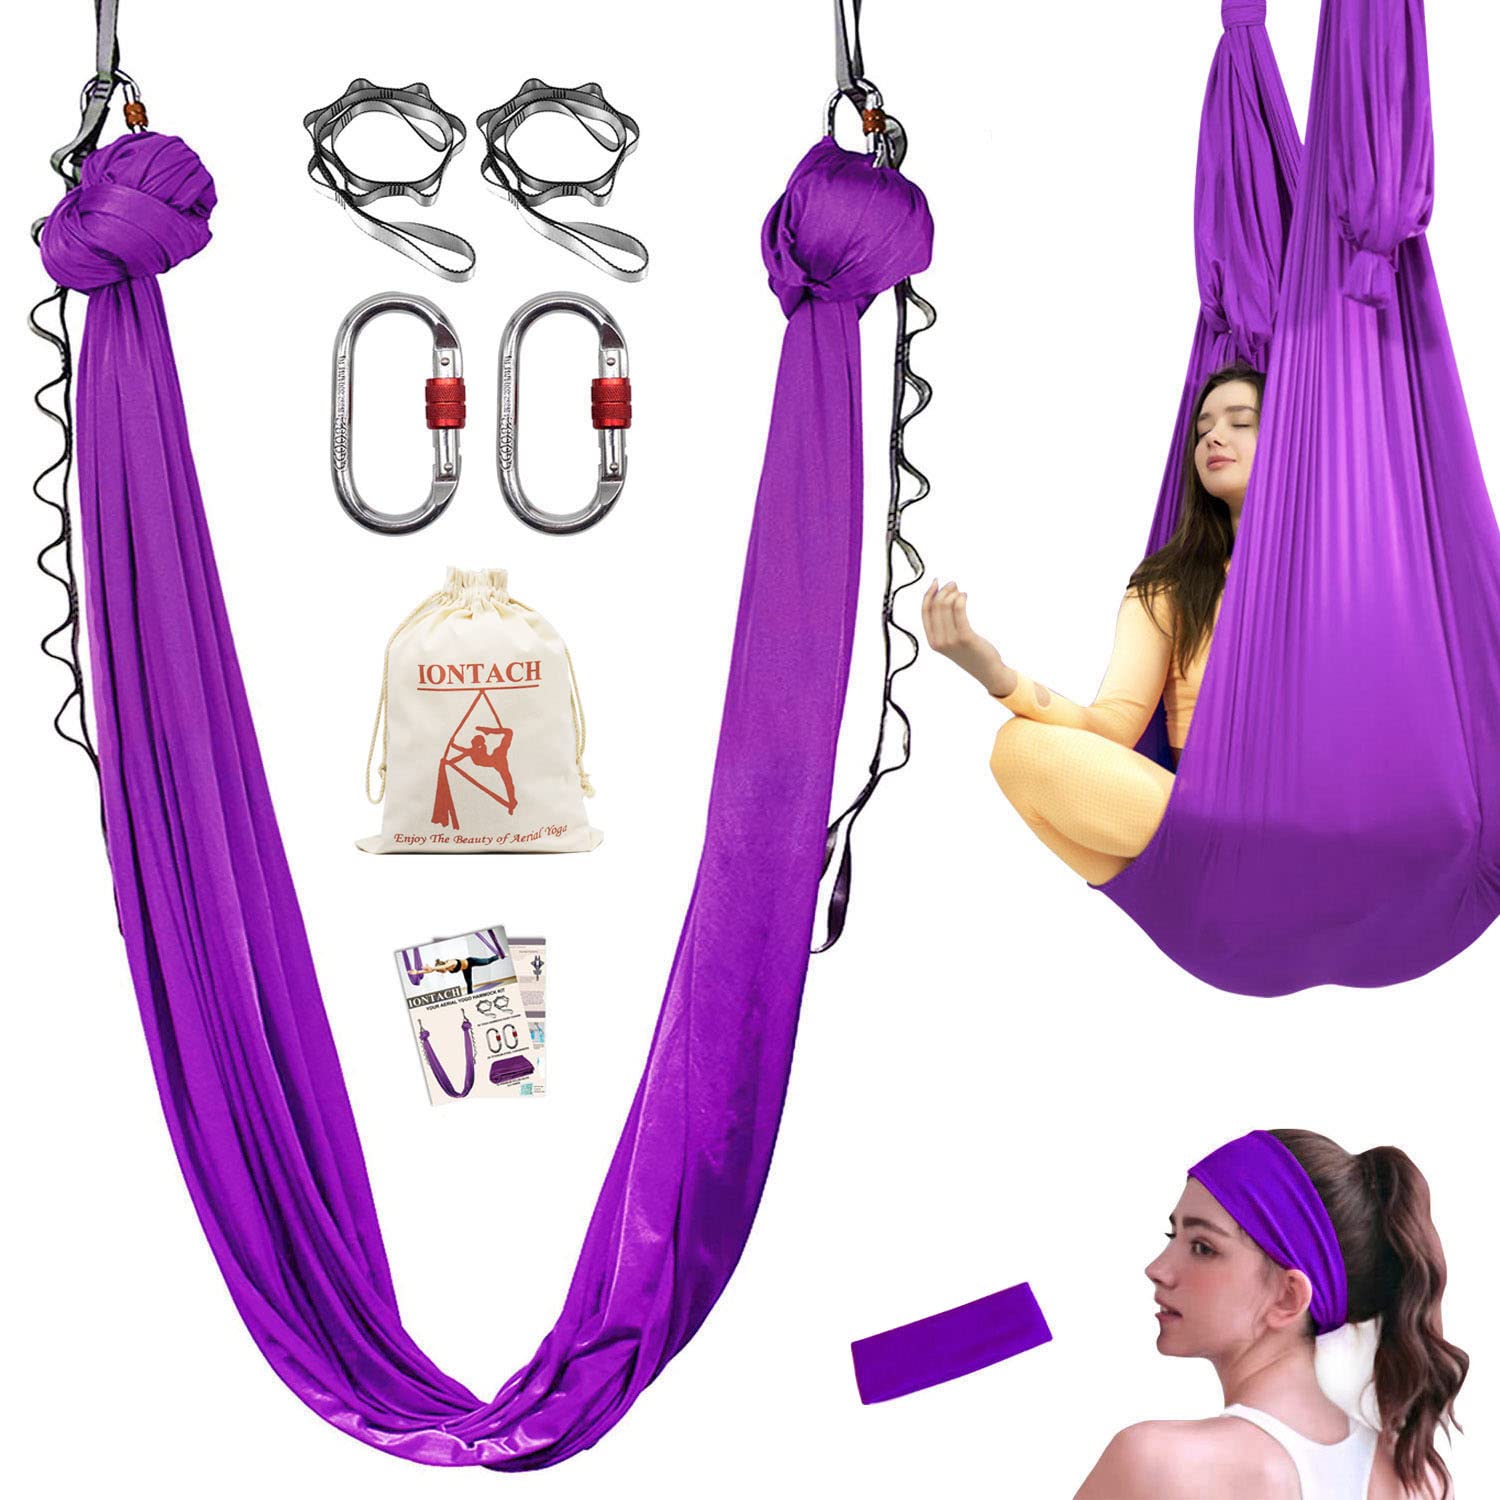 5m Premium Aerial Yoga Hammock, Aerial Yoga Swing Set,Antigravity